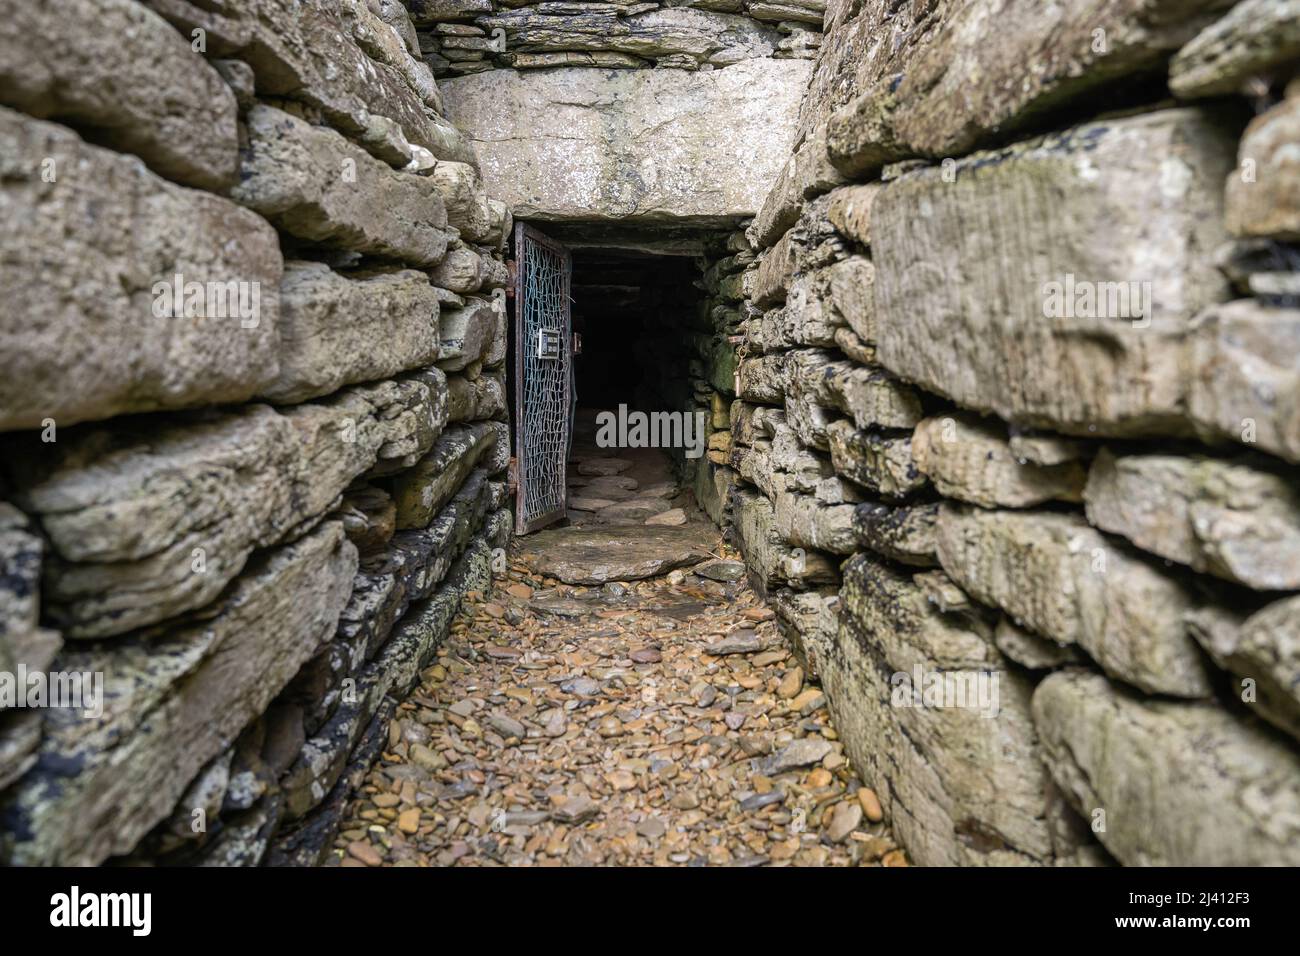 L'entrata stretta del tunnel di Moyness Chambered Cairn. Devi strisciare per 3 metri attraverso il passaggio per emergere all'interno della tomba neolitica. Foto Stock